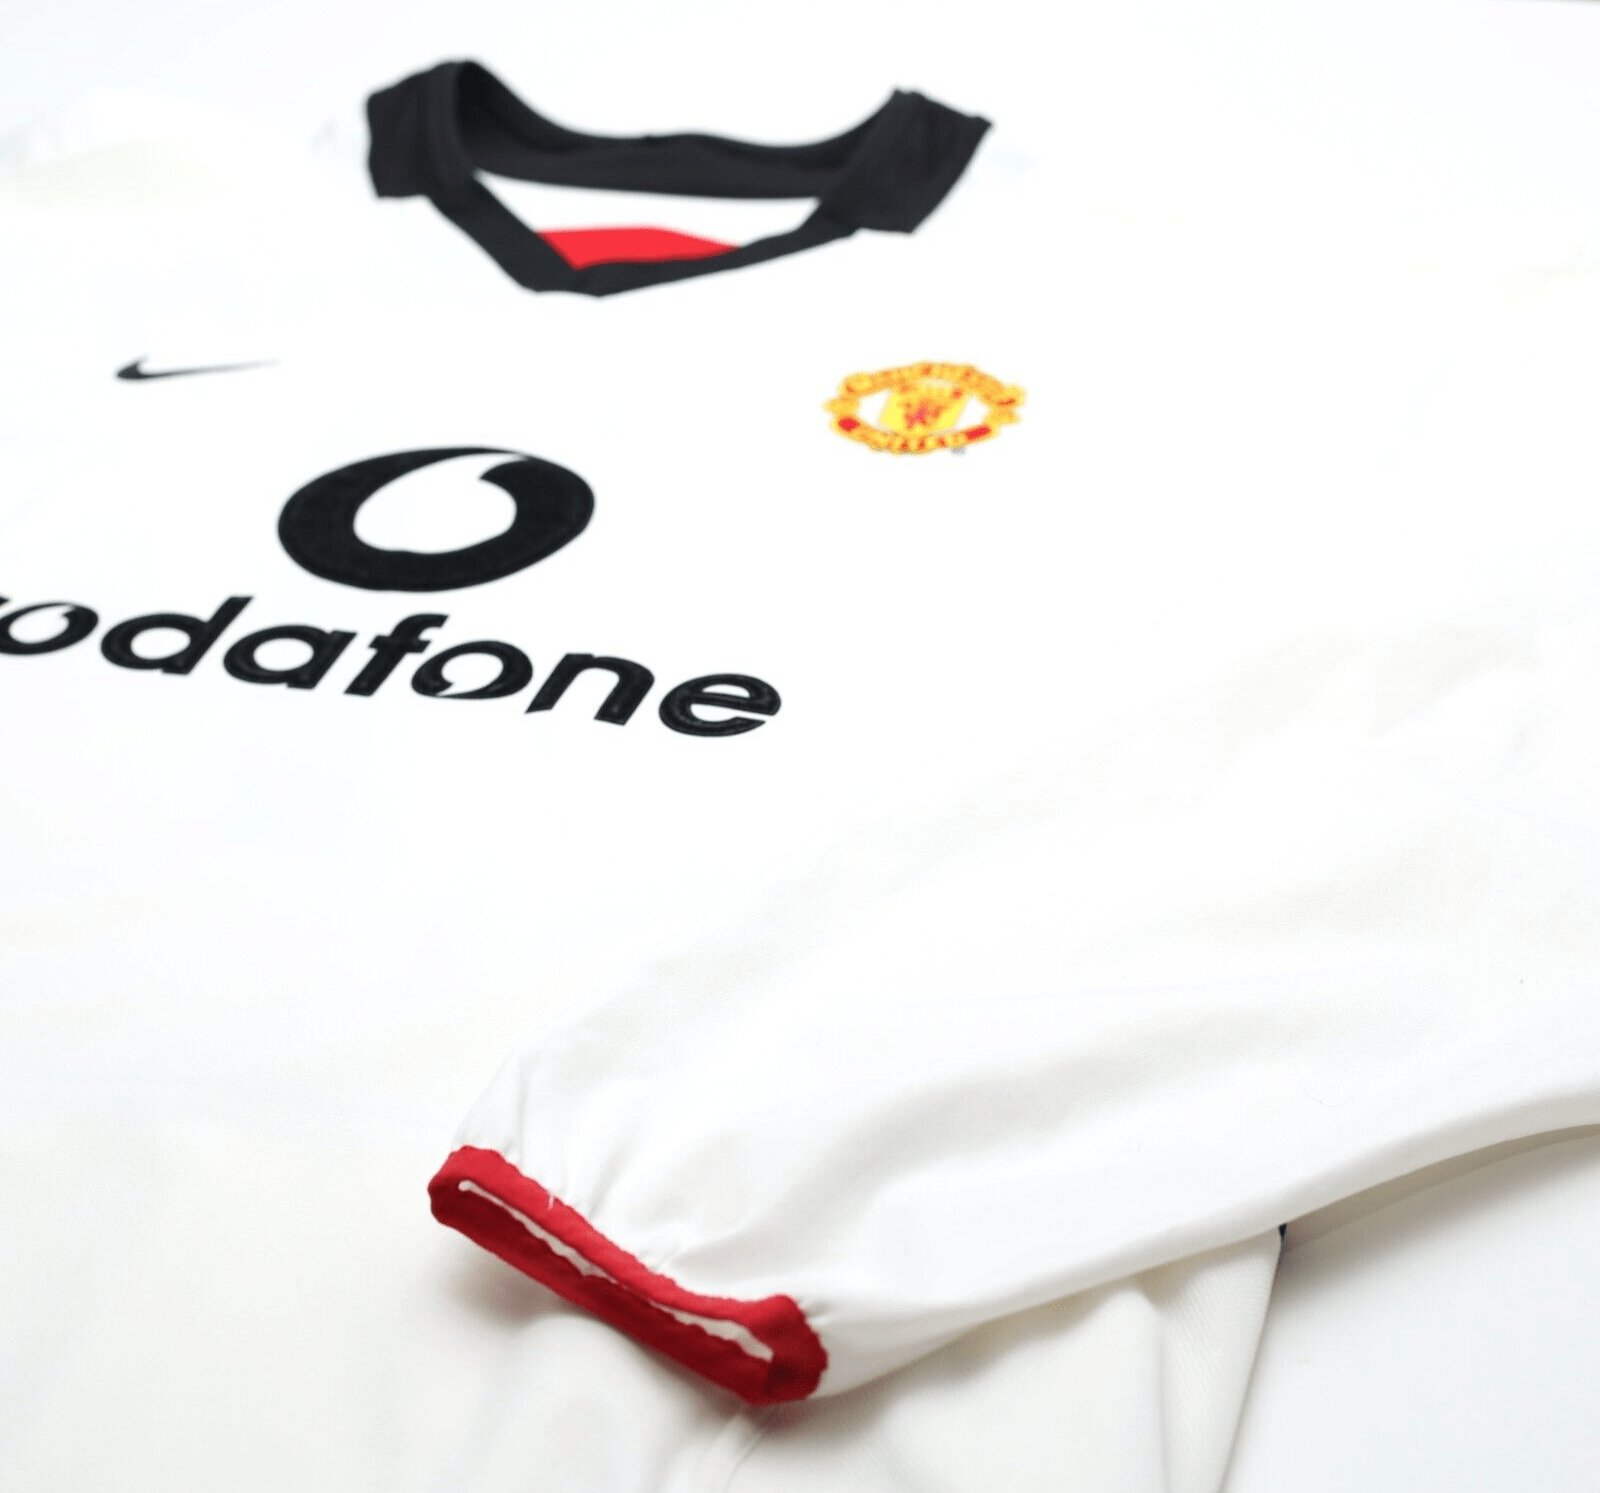 2002/03 BECKHAM #7 Manchester United Vintage Nike LS Away Football Shirt (XL)